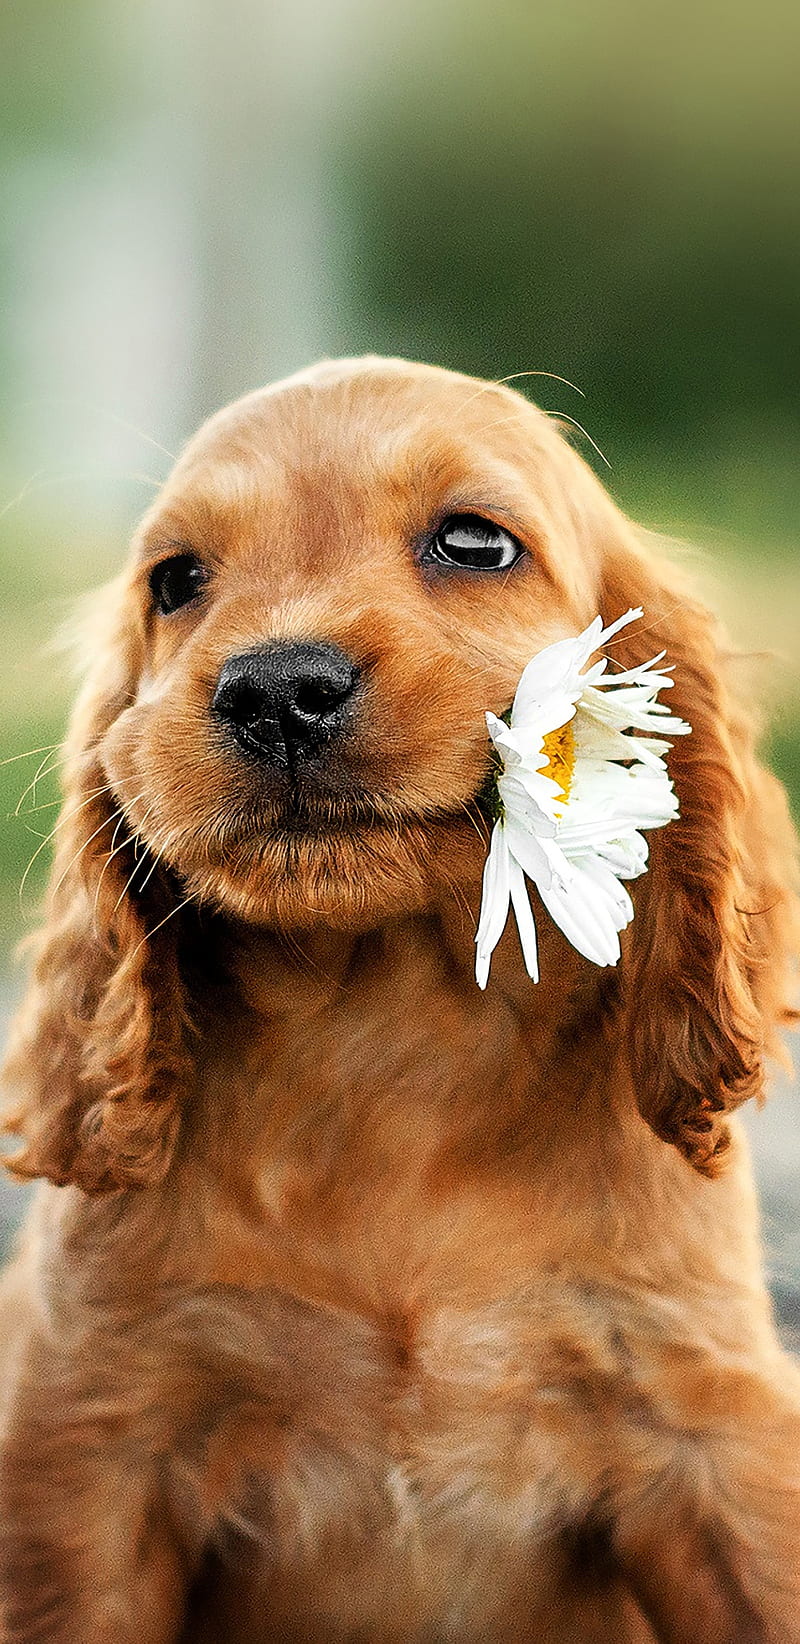 Chó con nâu ngọt ngào: Những chú chó con nâu tuyệt vời như thế nào? Chúng thật đáng yêu và ngọt ngào! Hãy xem hình ảnh chiếc mũi vành tóc của chó con cưng này. Nó sẽ khiến bạn muốn ôm chặt chú chó này vào lòng.